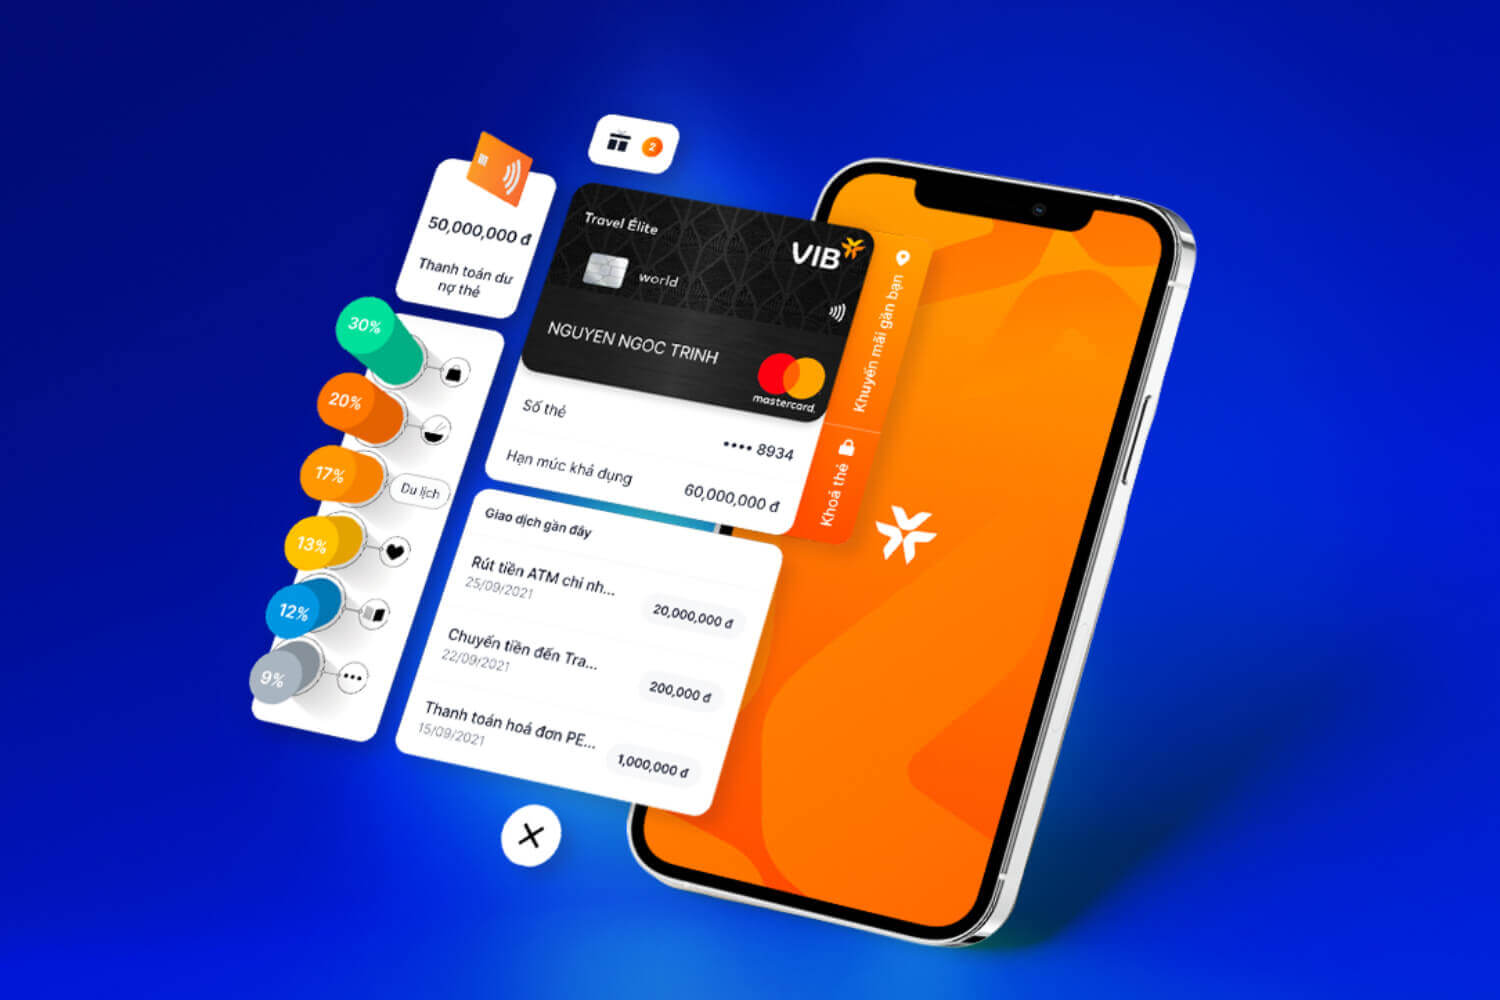 MyVIB 2.0 - App ngân hàng được đánh giá tốt nhất hiện nay